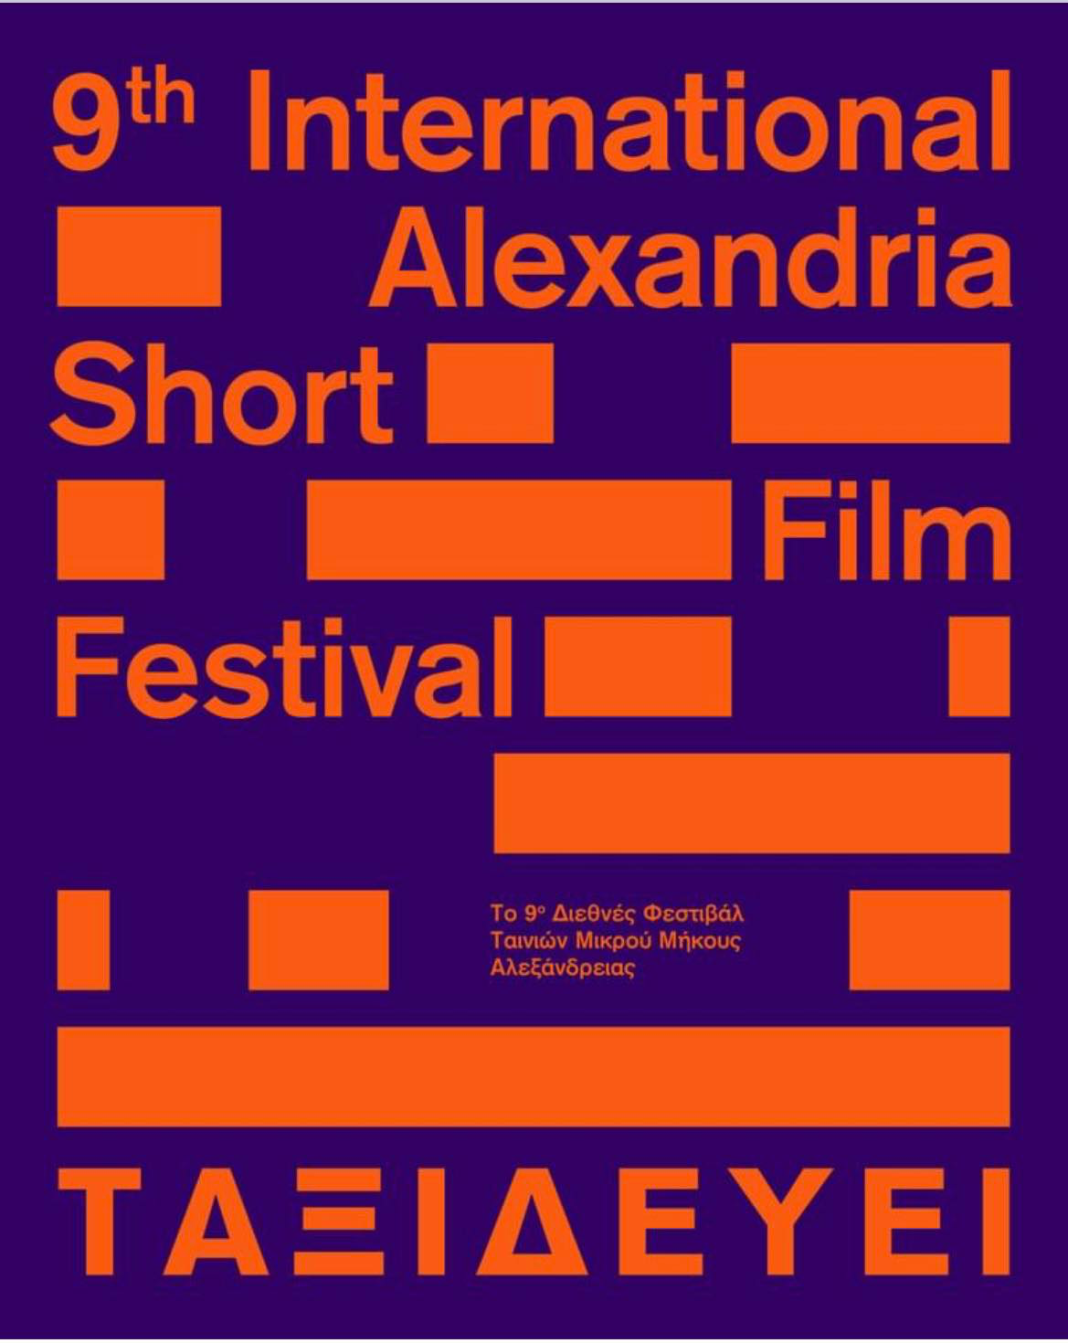 Στην Κινηματογραφική Λέσχη Αλεξανδρούπολης φιλοξενείται το 9ο Φεστιβάλ Ταινιών Μικρού Μήκους Αλεξάνδρειας